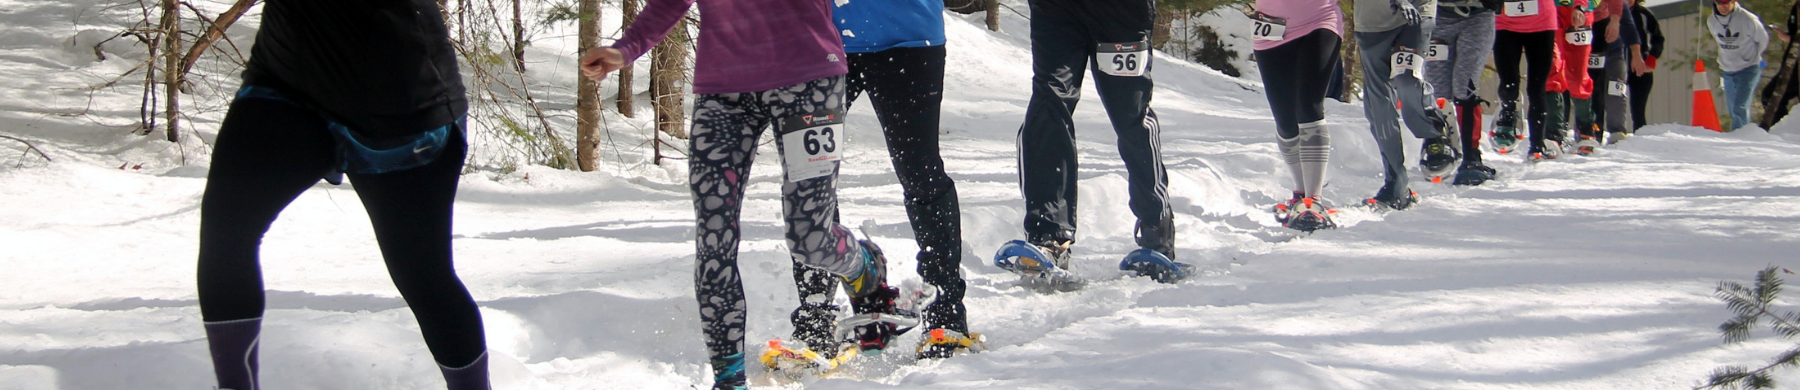 snowshoe race